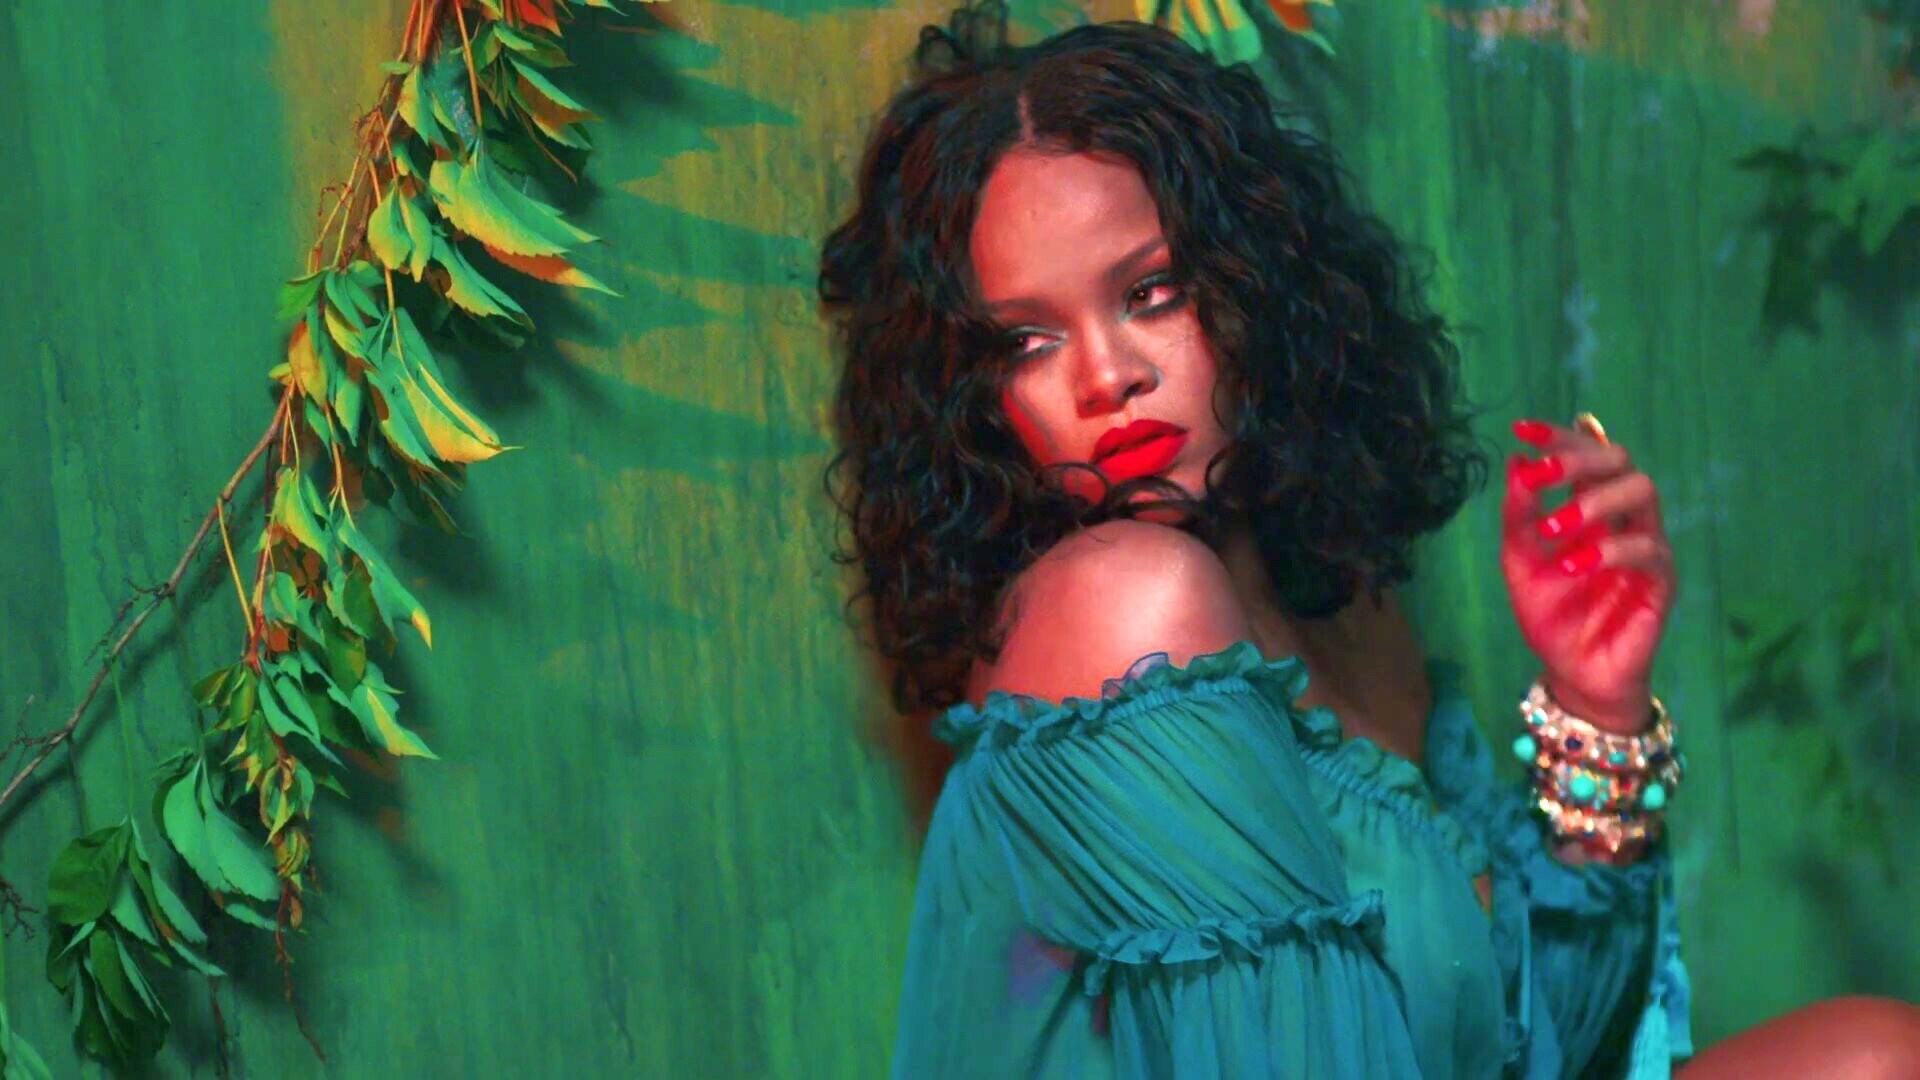 1920x1080 DJ Khaled Wild Thoughts Music Video ft. Rihanna, Bryson Tiller